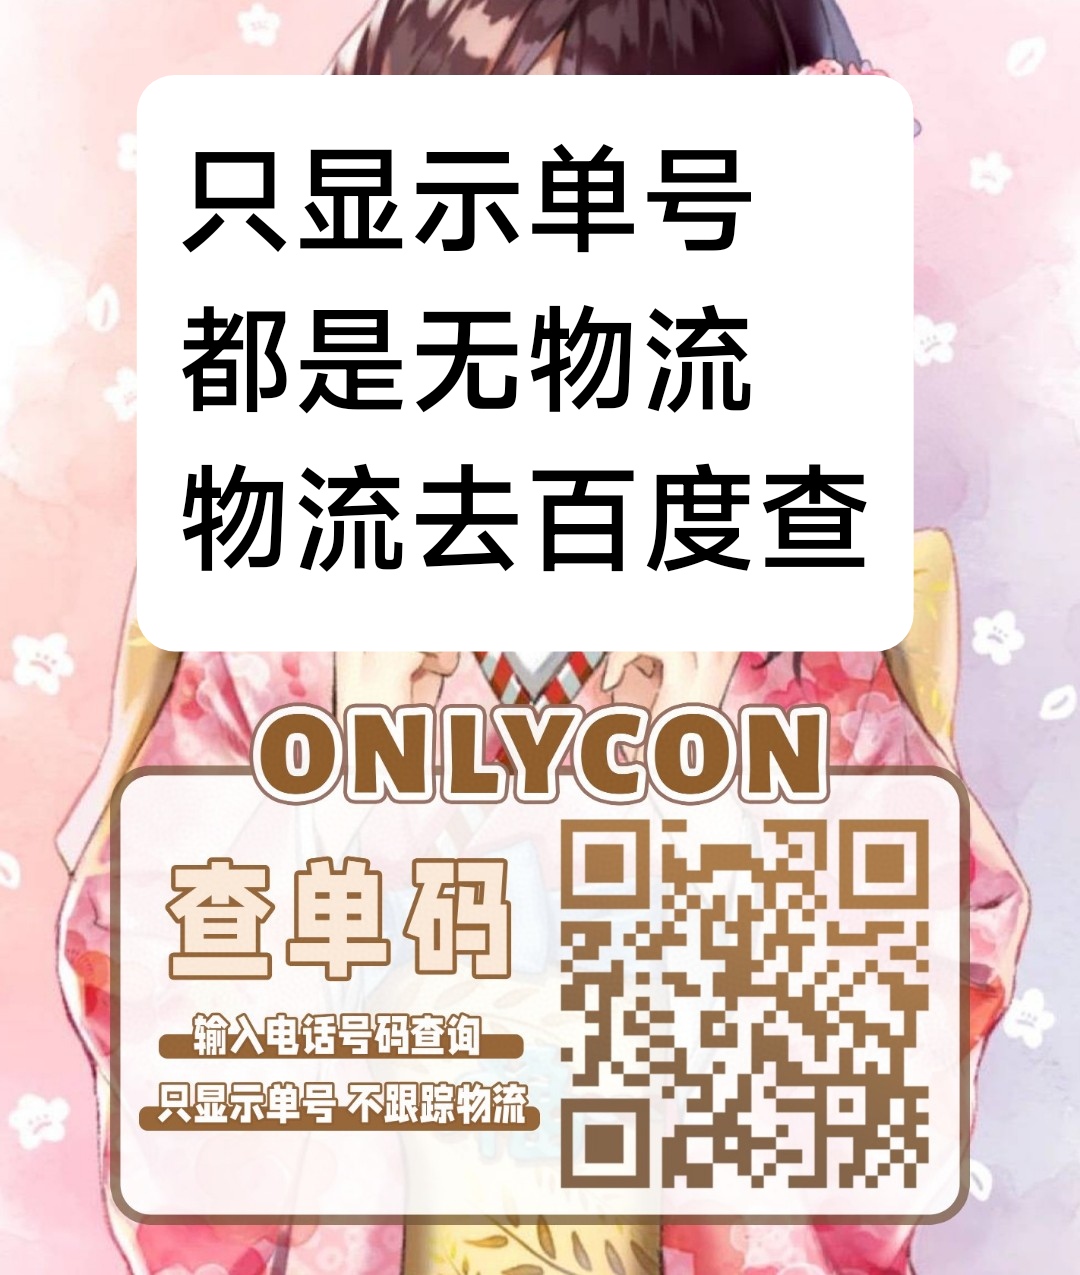 【年抛上新】ONLYCON 早春新品发布会 解锁绝美新品榜单 - VVCON美瞳网